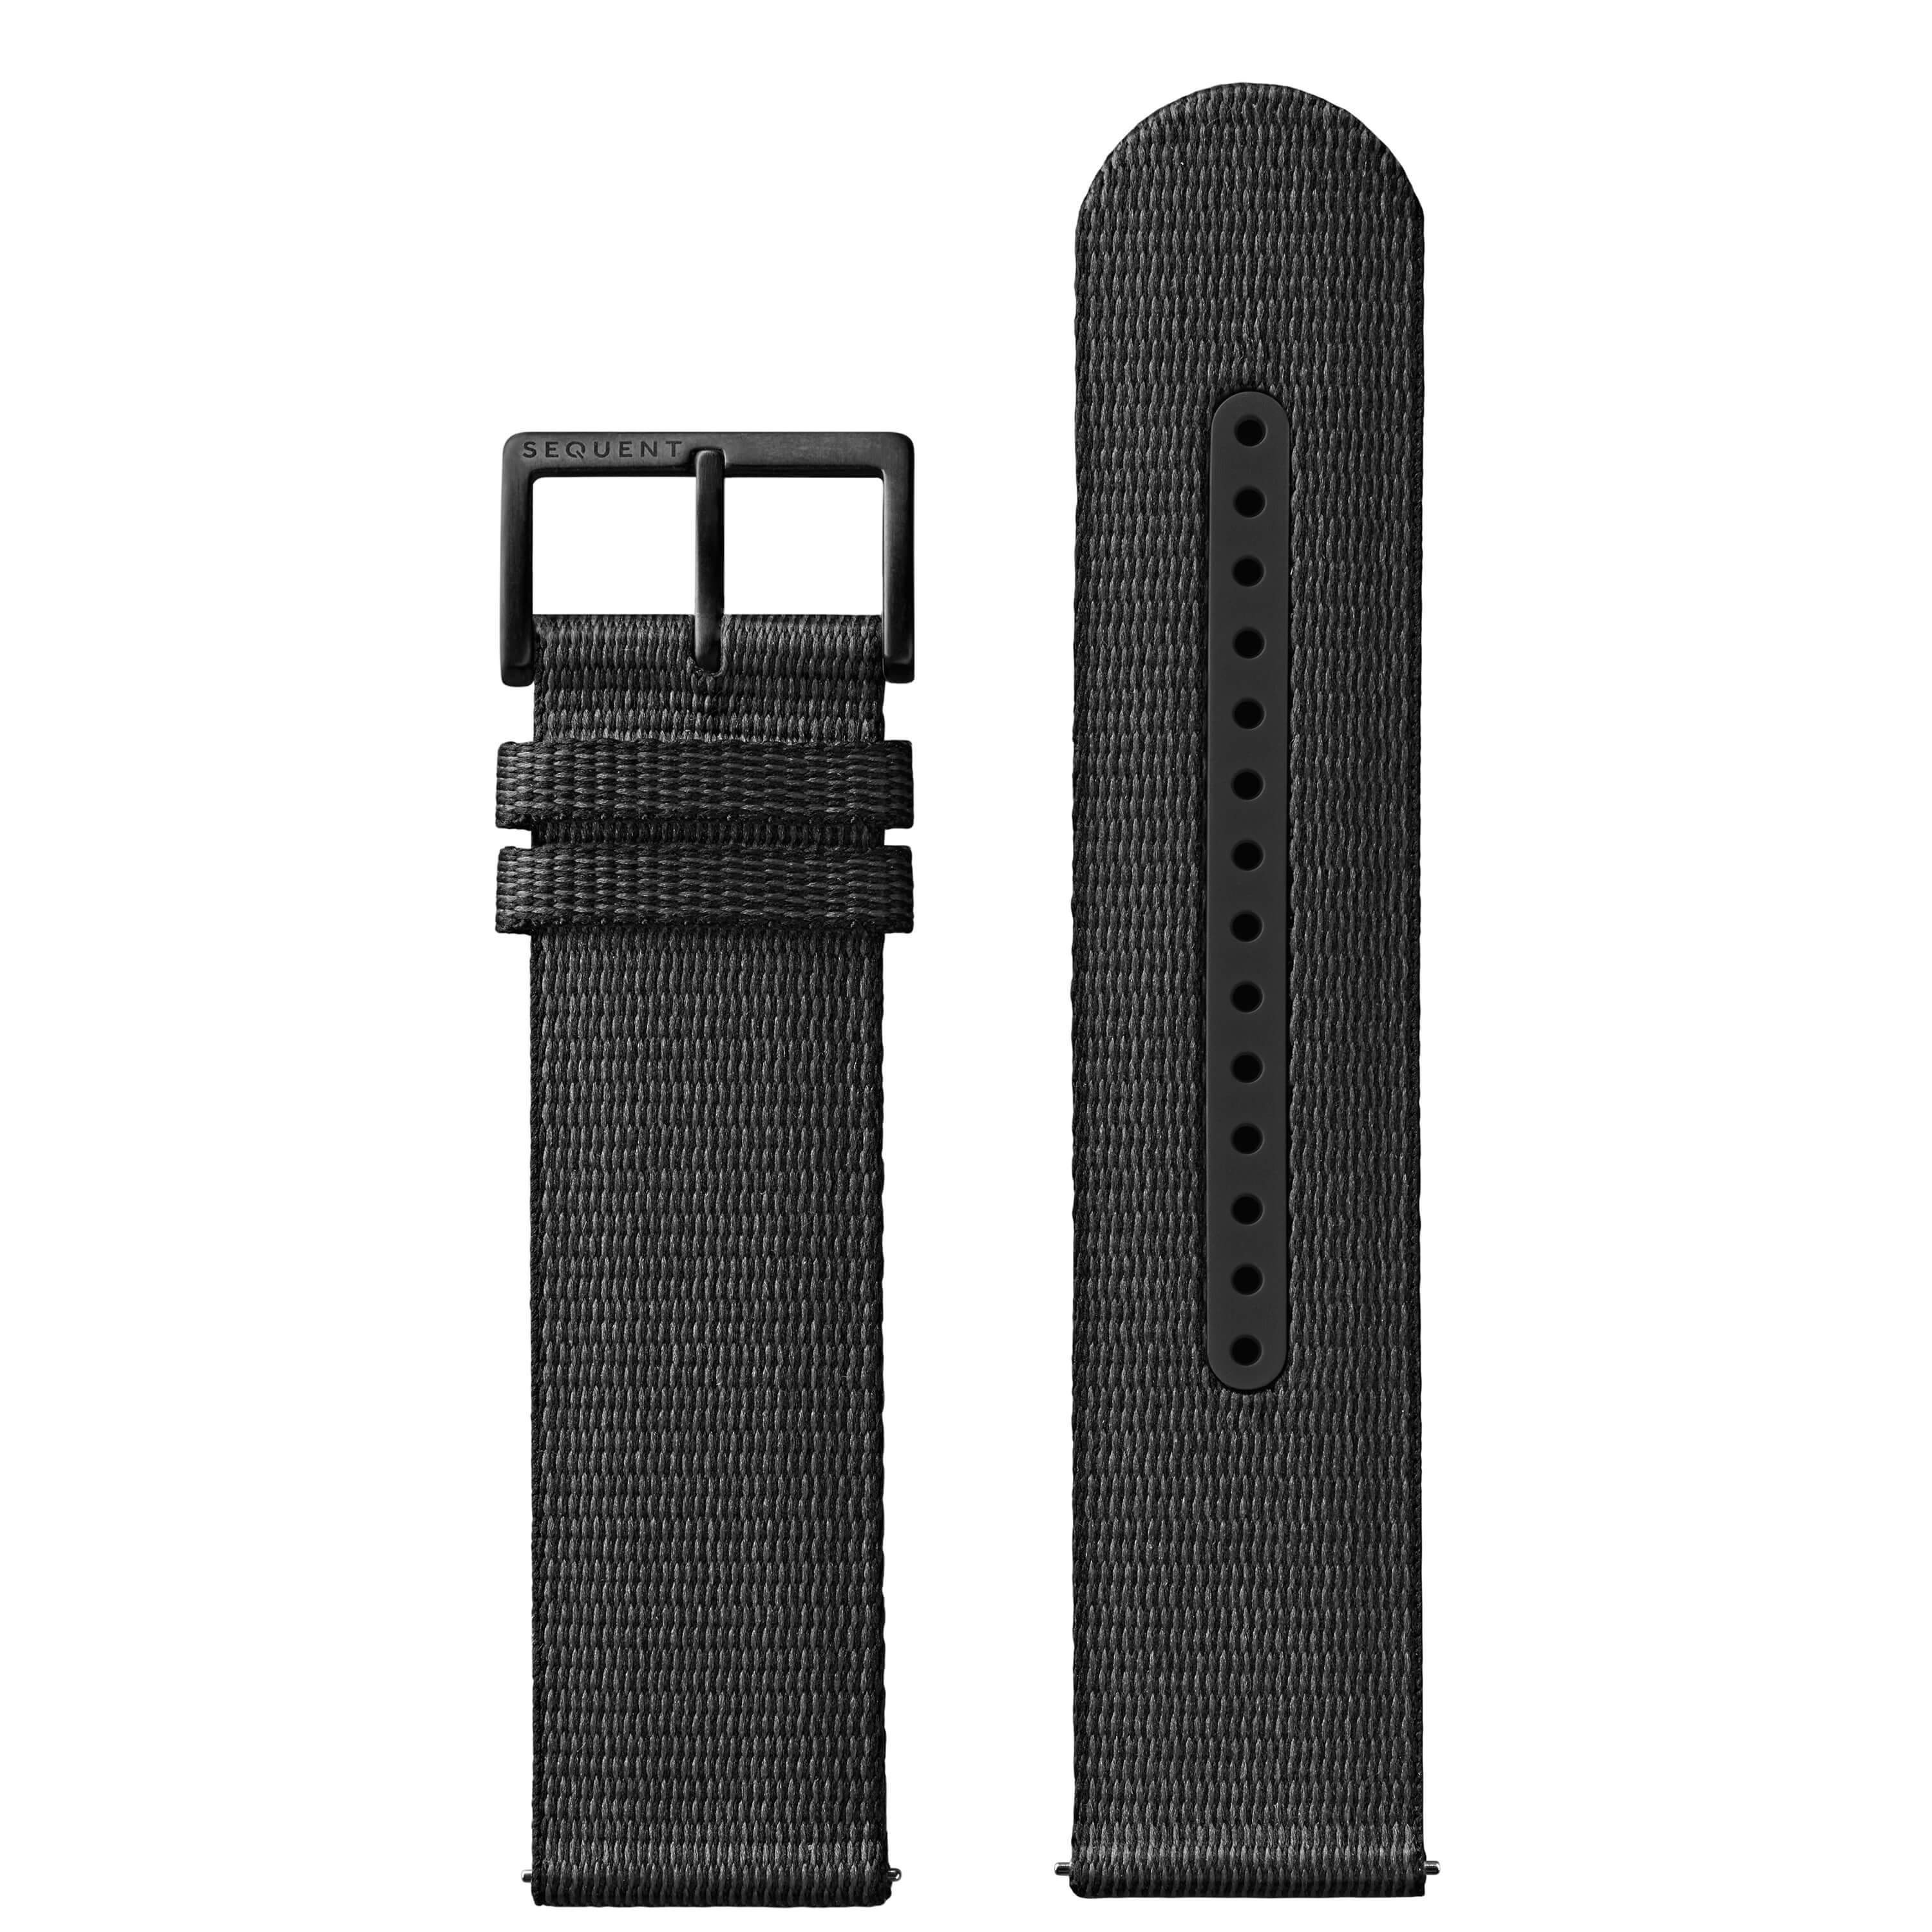 22mm - Black #tide textile strap - Black Titanium buckle